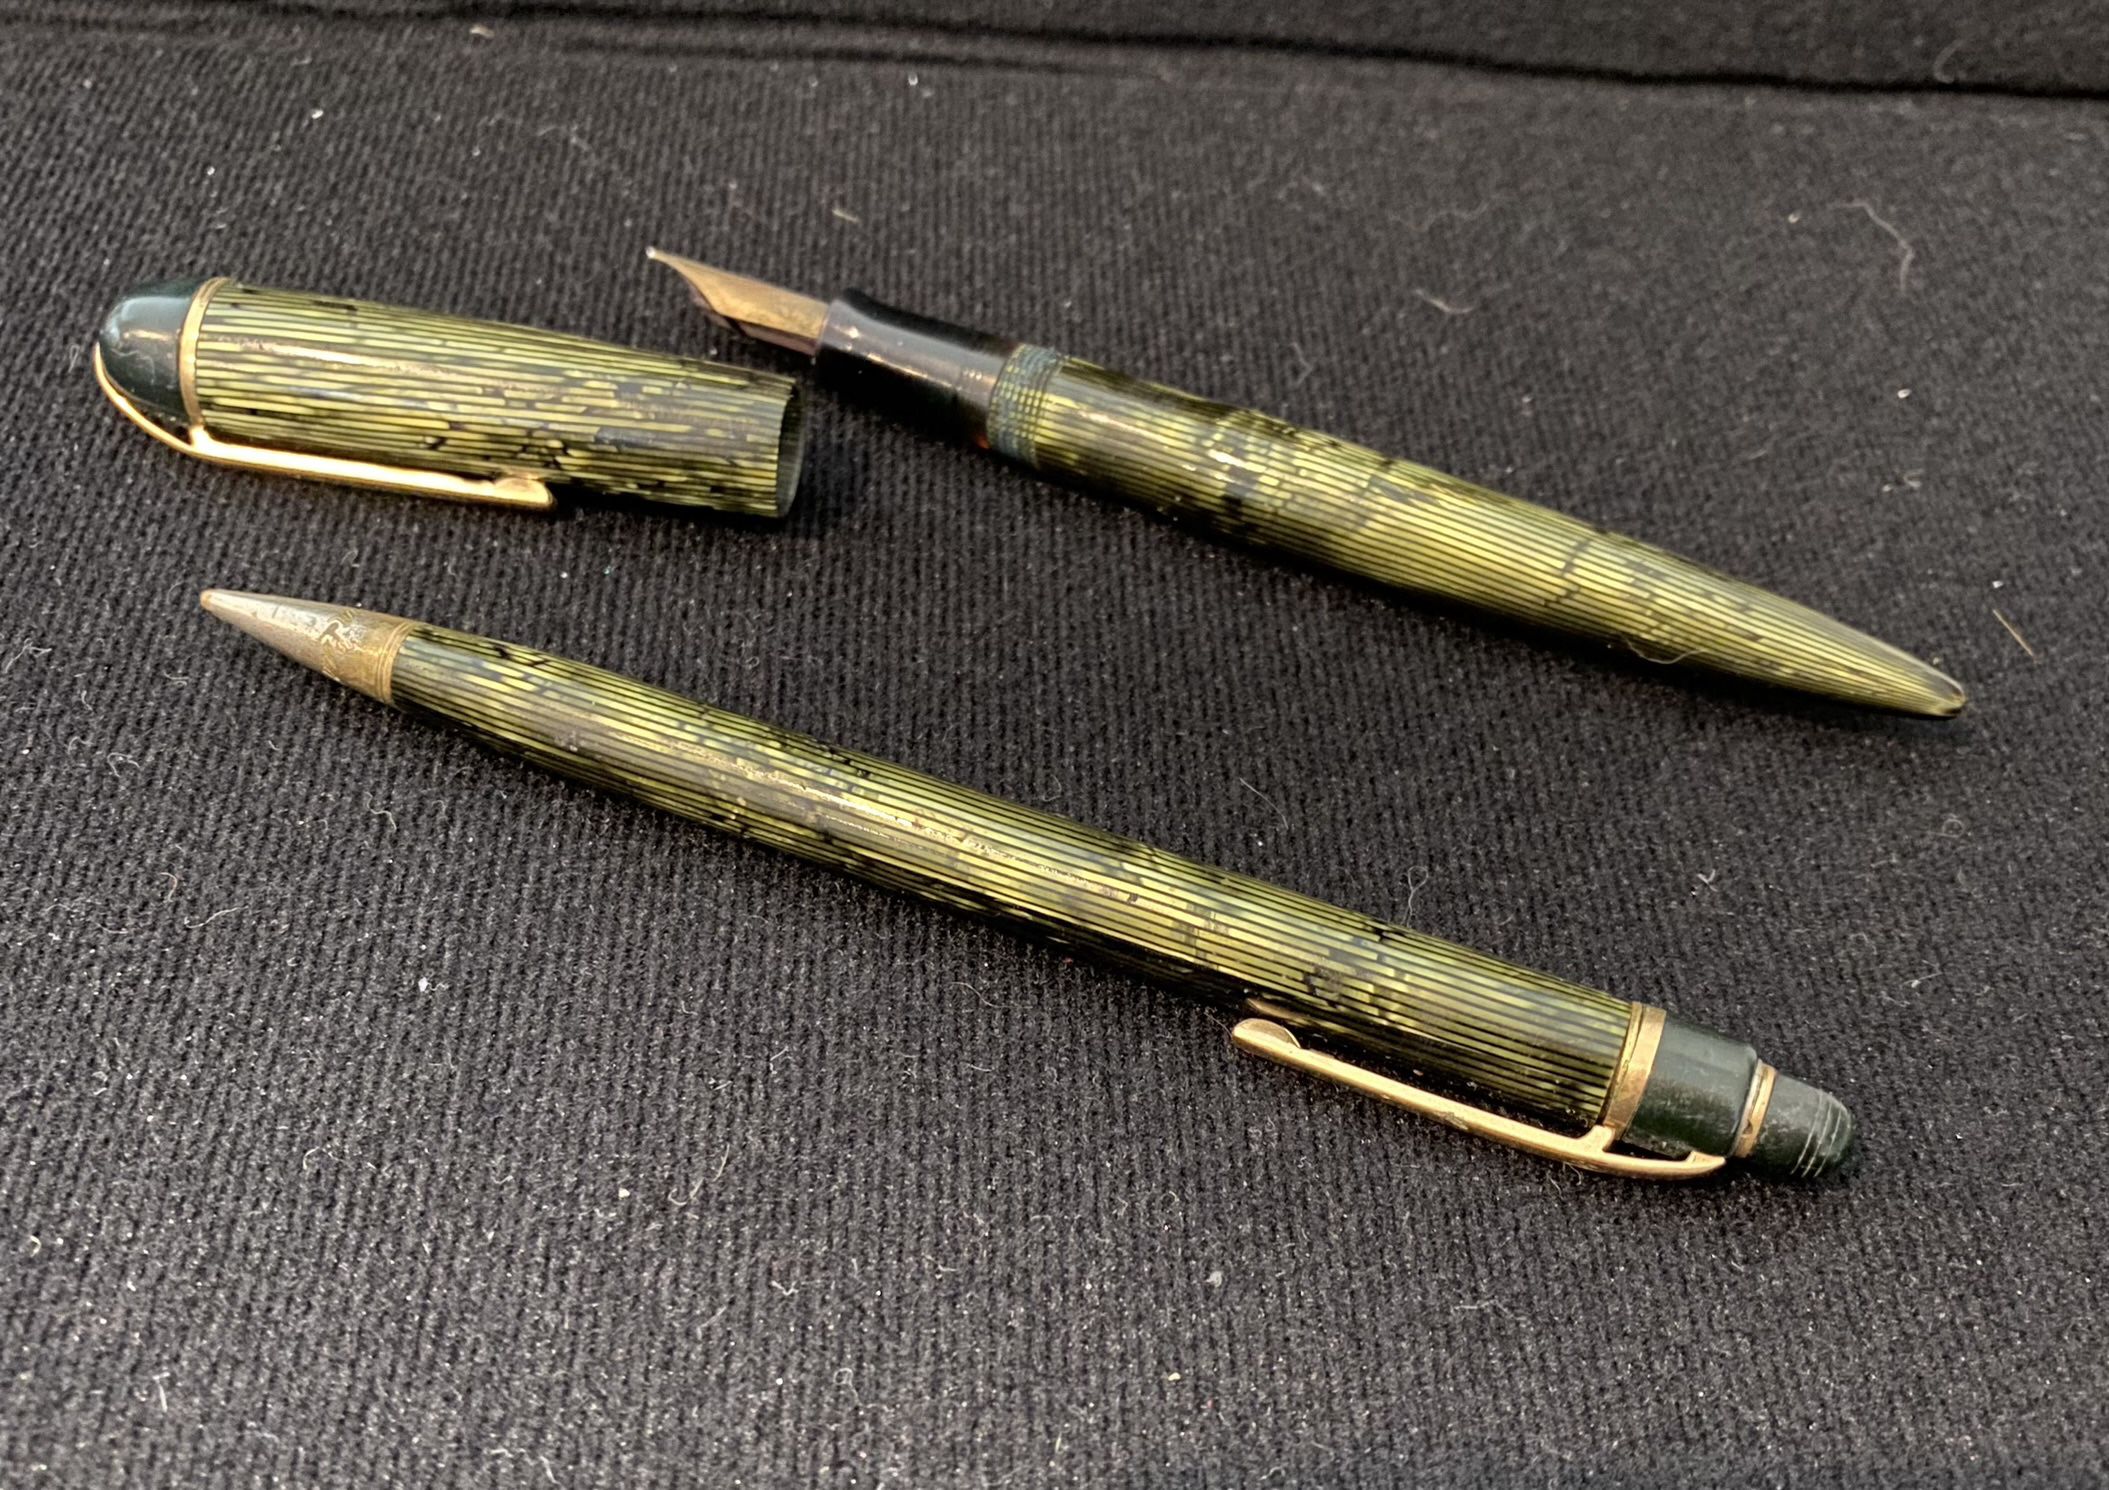 Antique, Pen, And Pencil Set